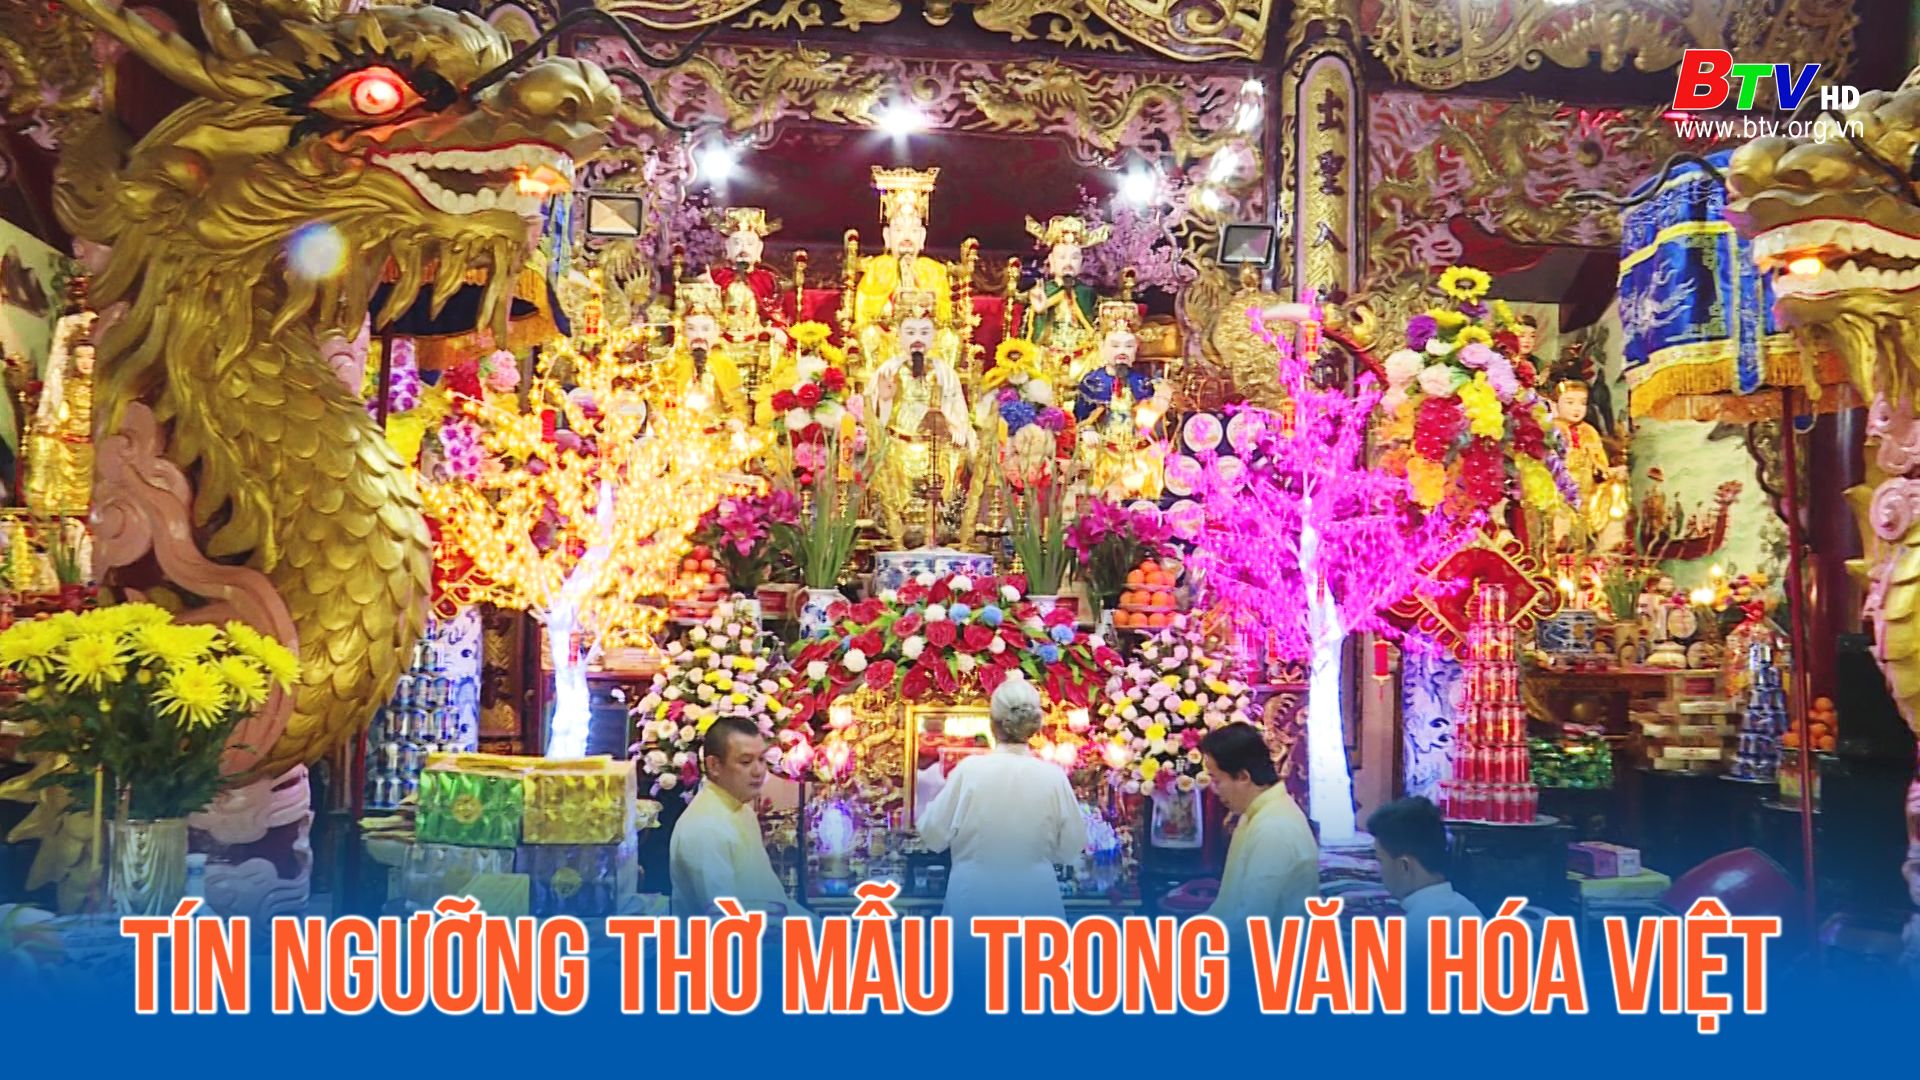 Tín ngưỡng thờ Mẫu trong văn hóa Việt